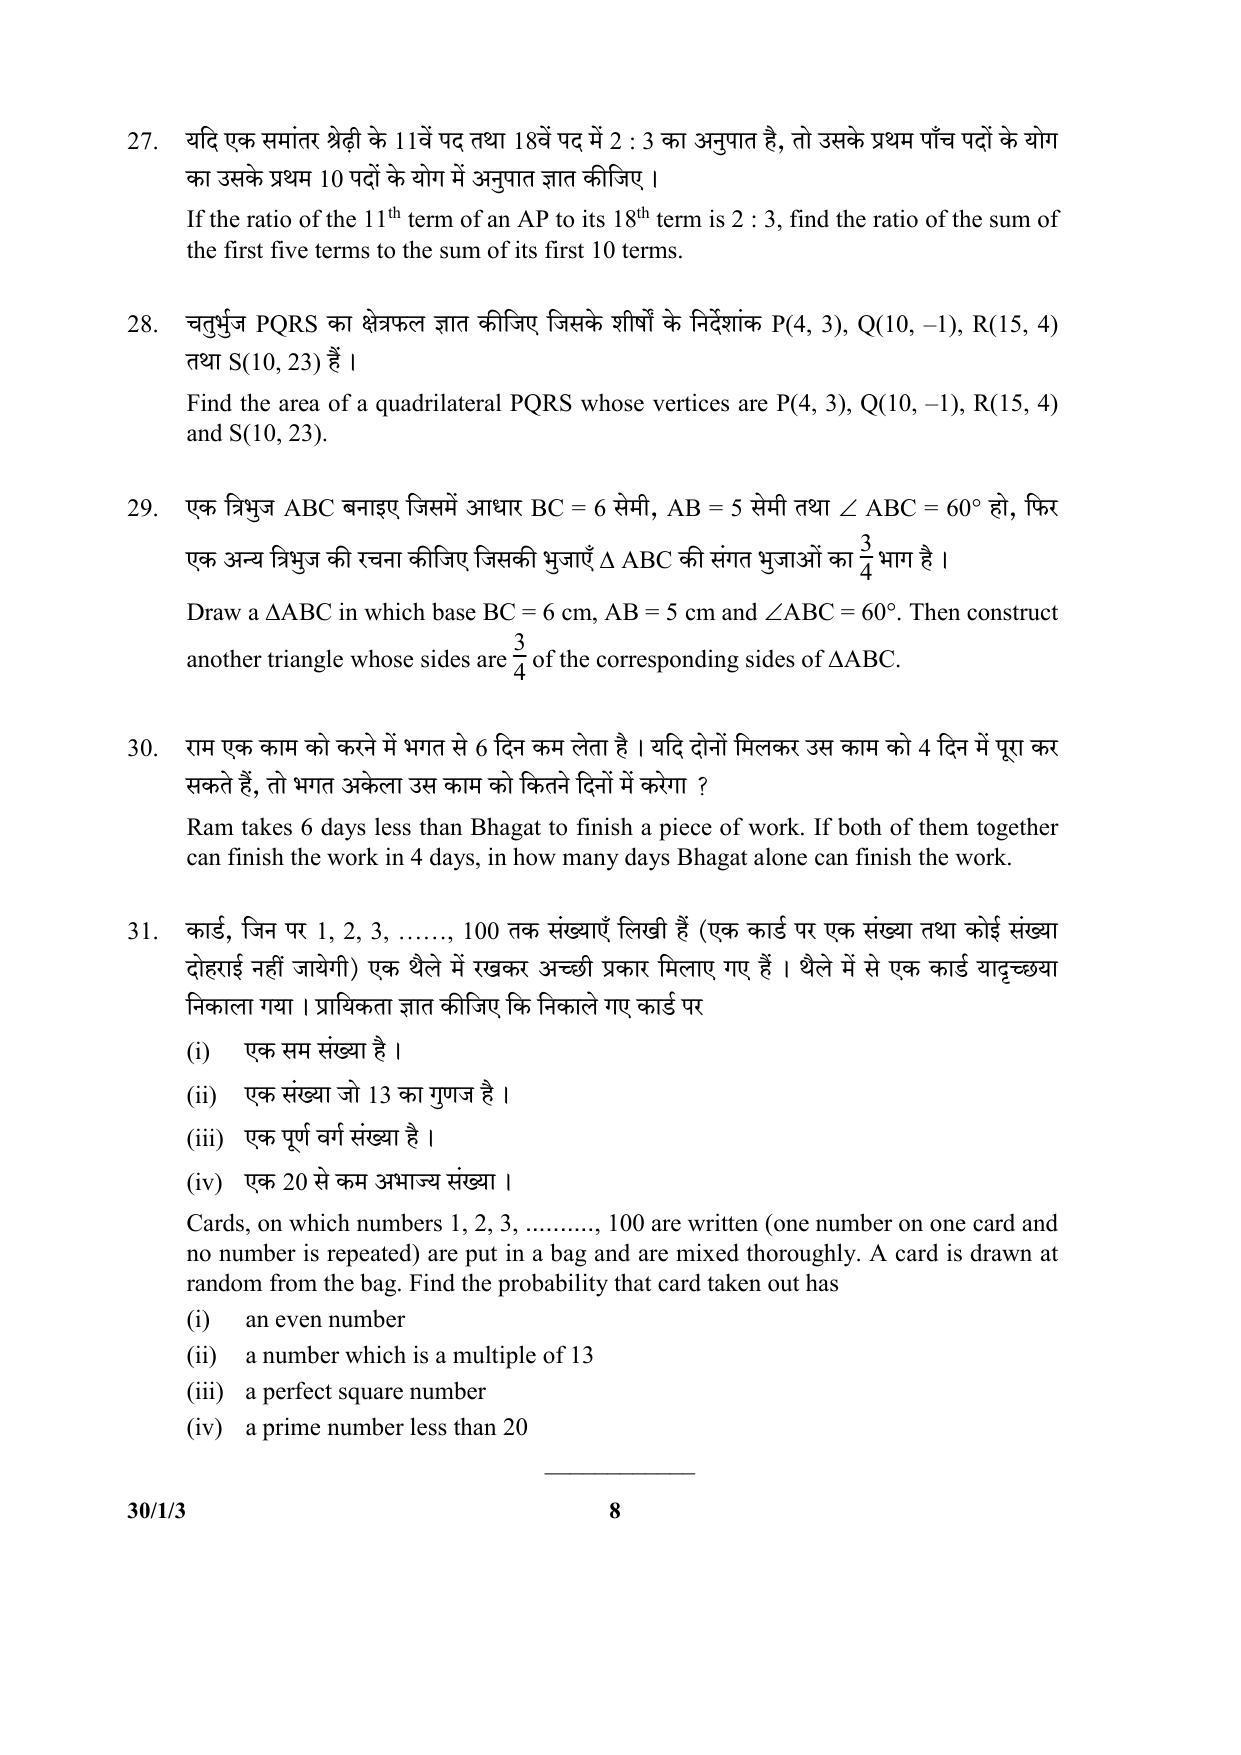 CBSE Class 10 30-1-3 (Mathematics) 2017-comptt Question Paper - Page 8